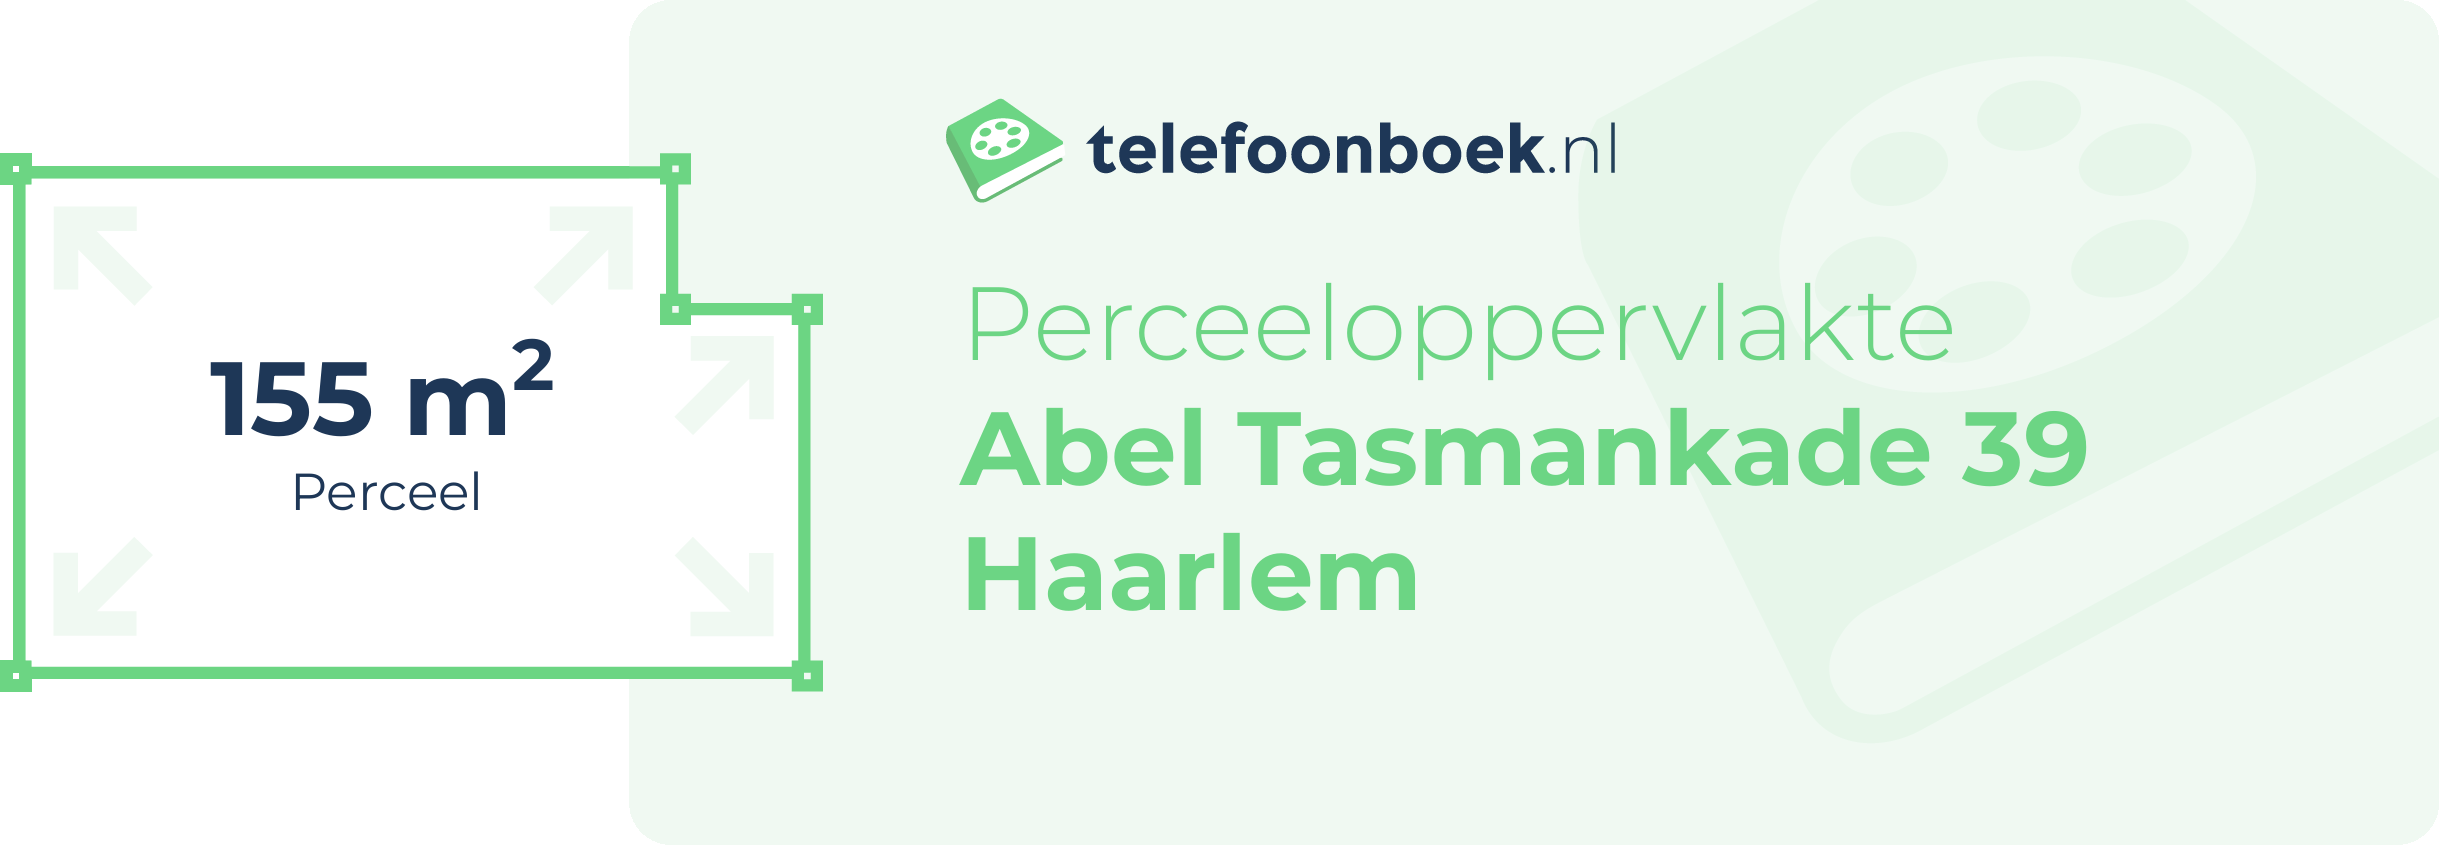 Perceeloppervlakte Abel Tasmankade 39 Haarlem